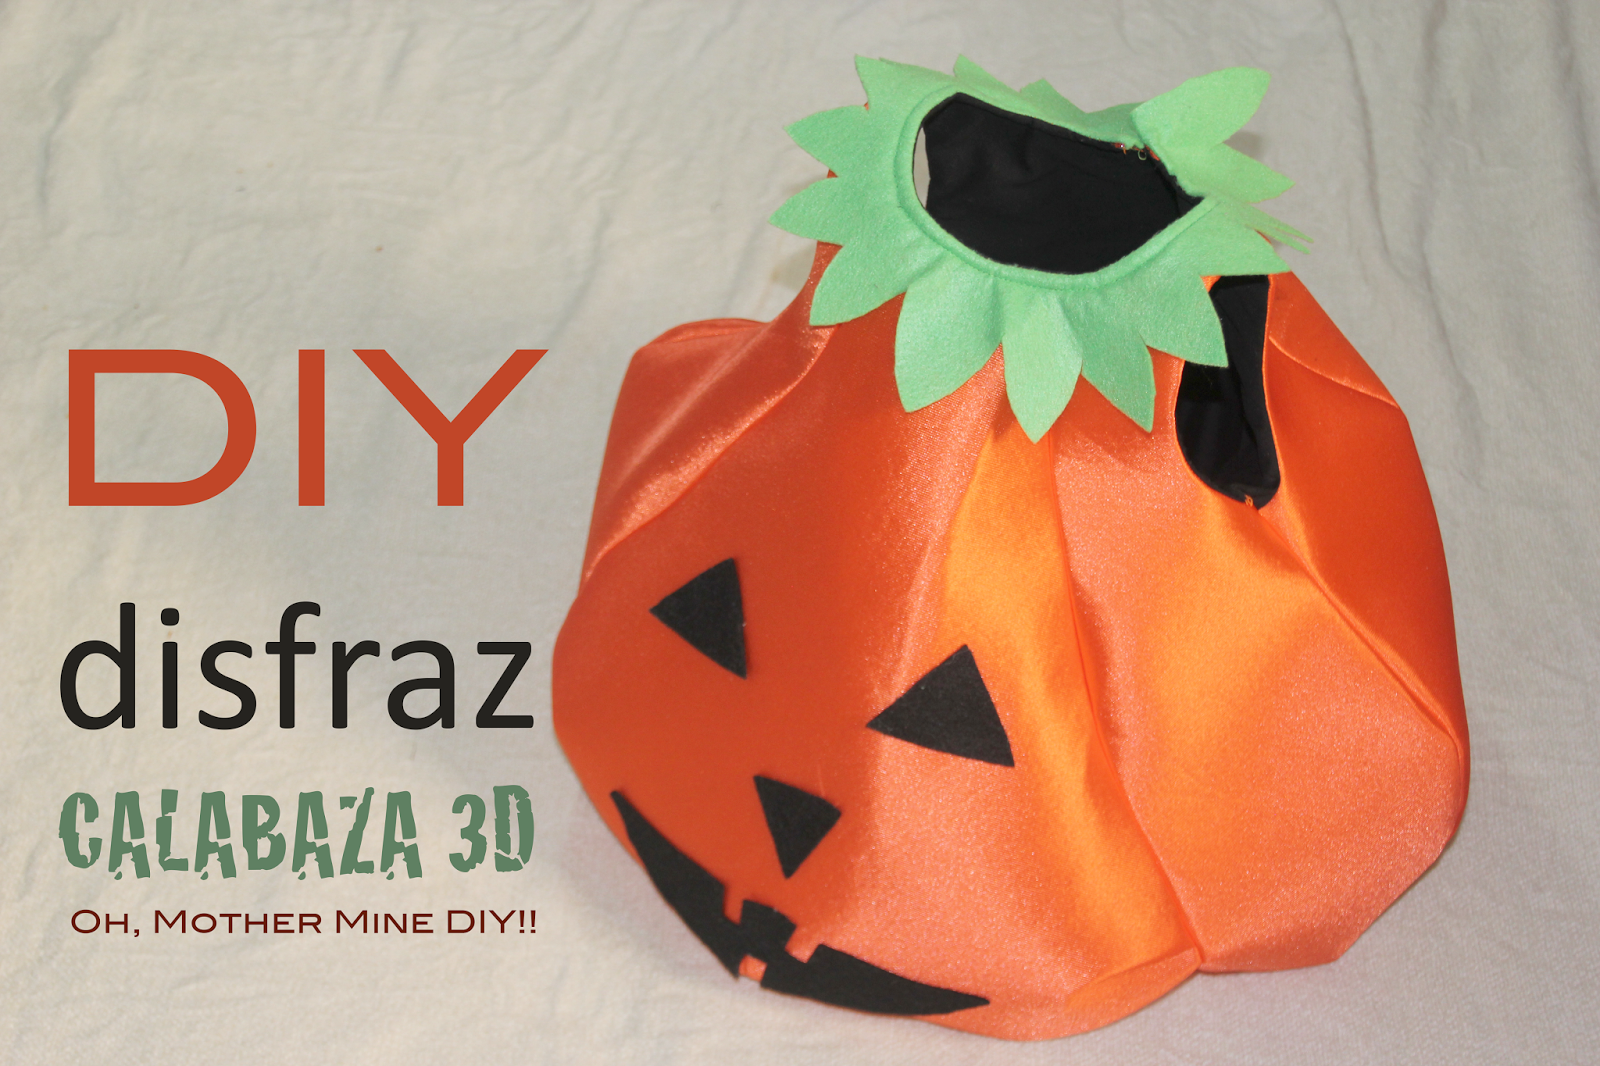 DIY Cómo hacer un DISFRAZ Halloween de CALABAZA para niños (patrón gratis)  - HANDBOX